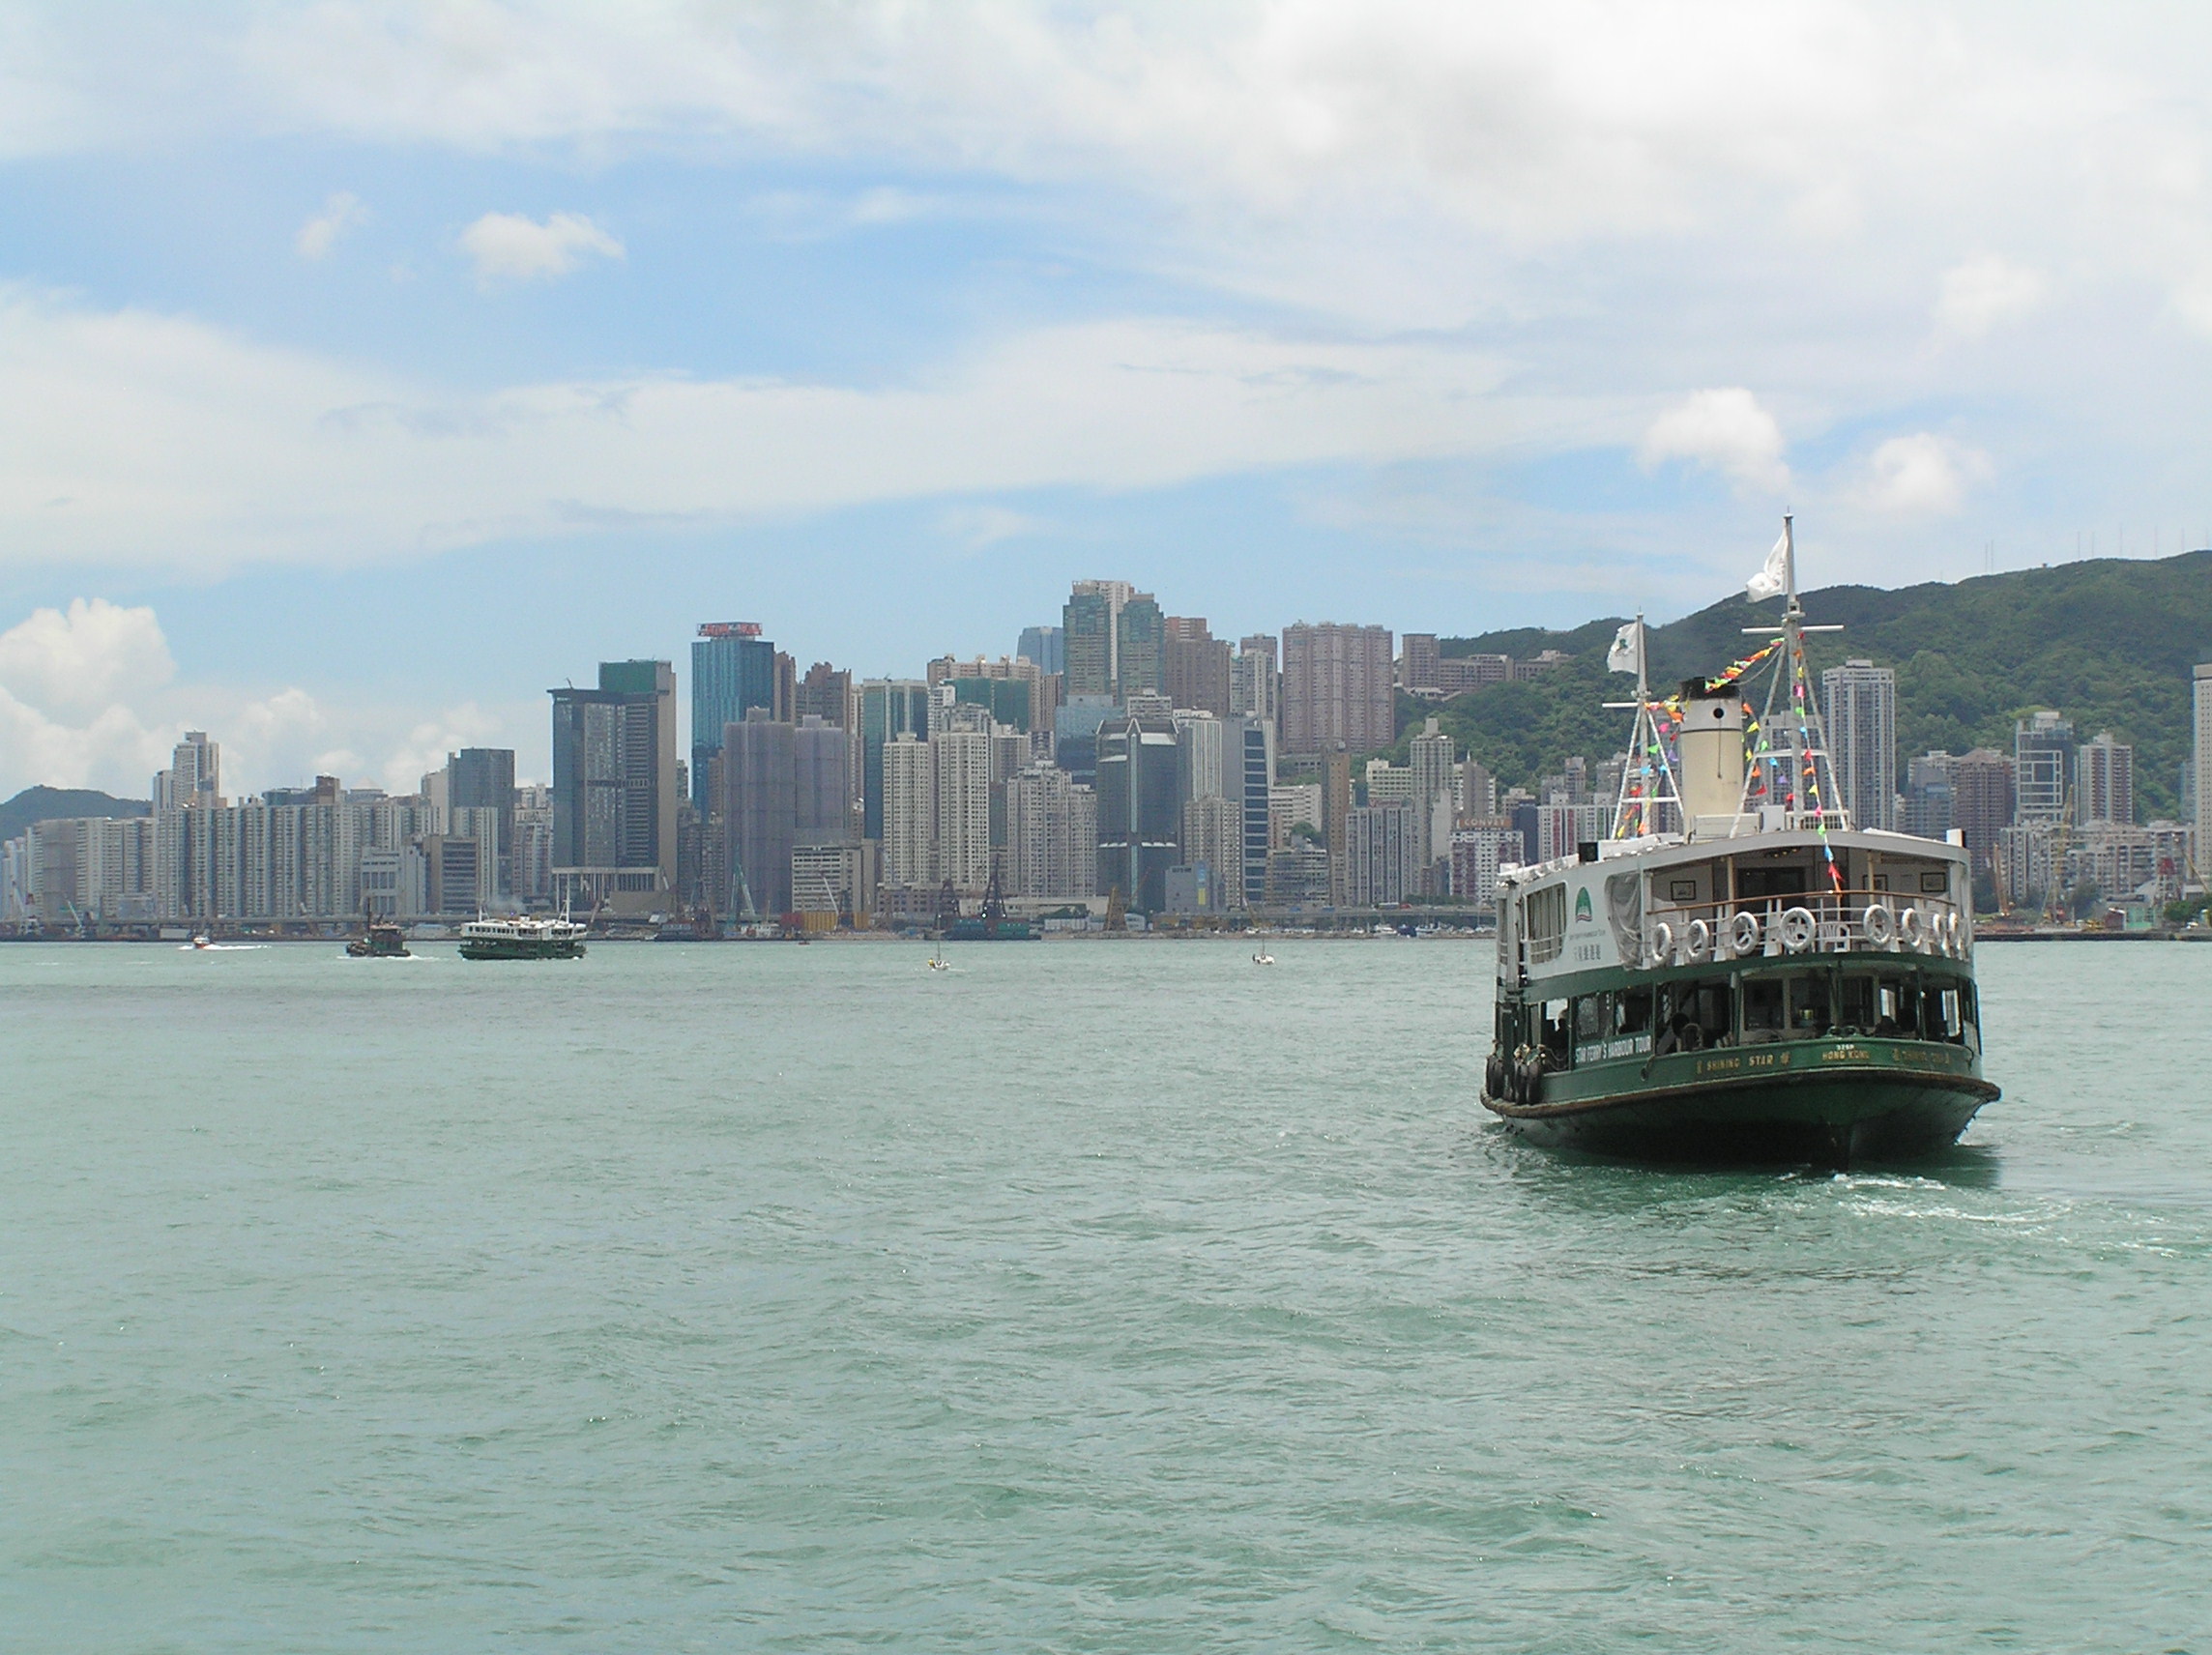 The Hong Kong Ferry